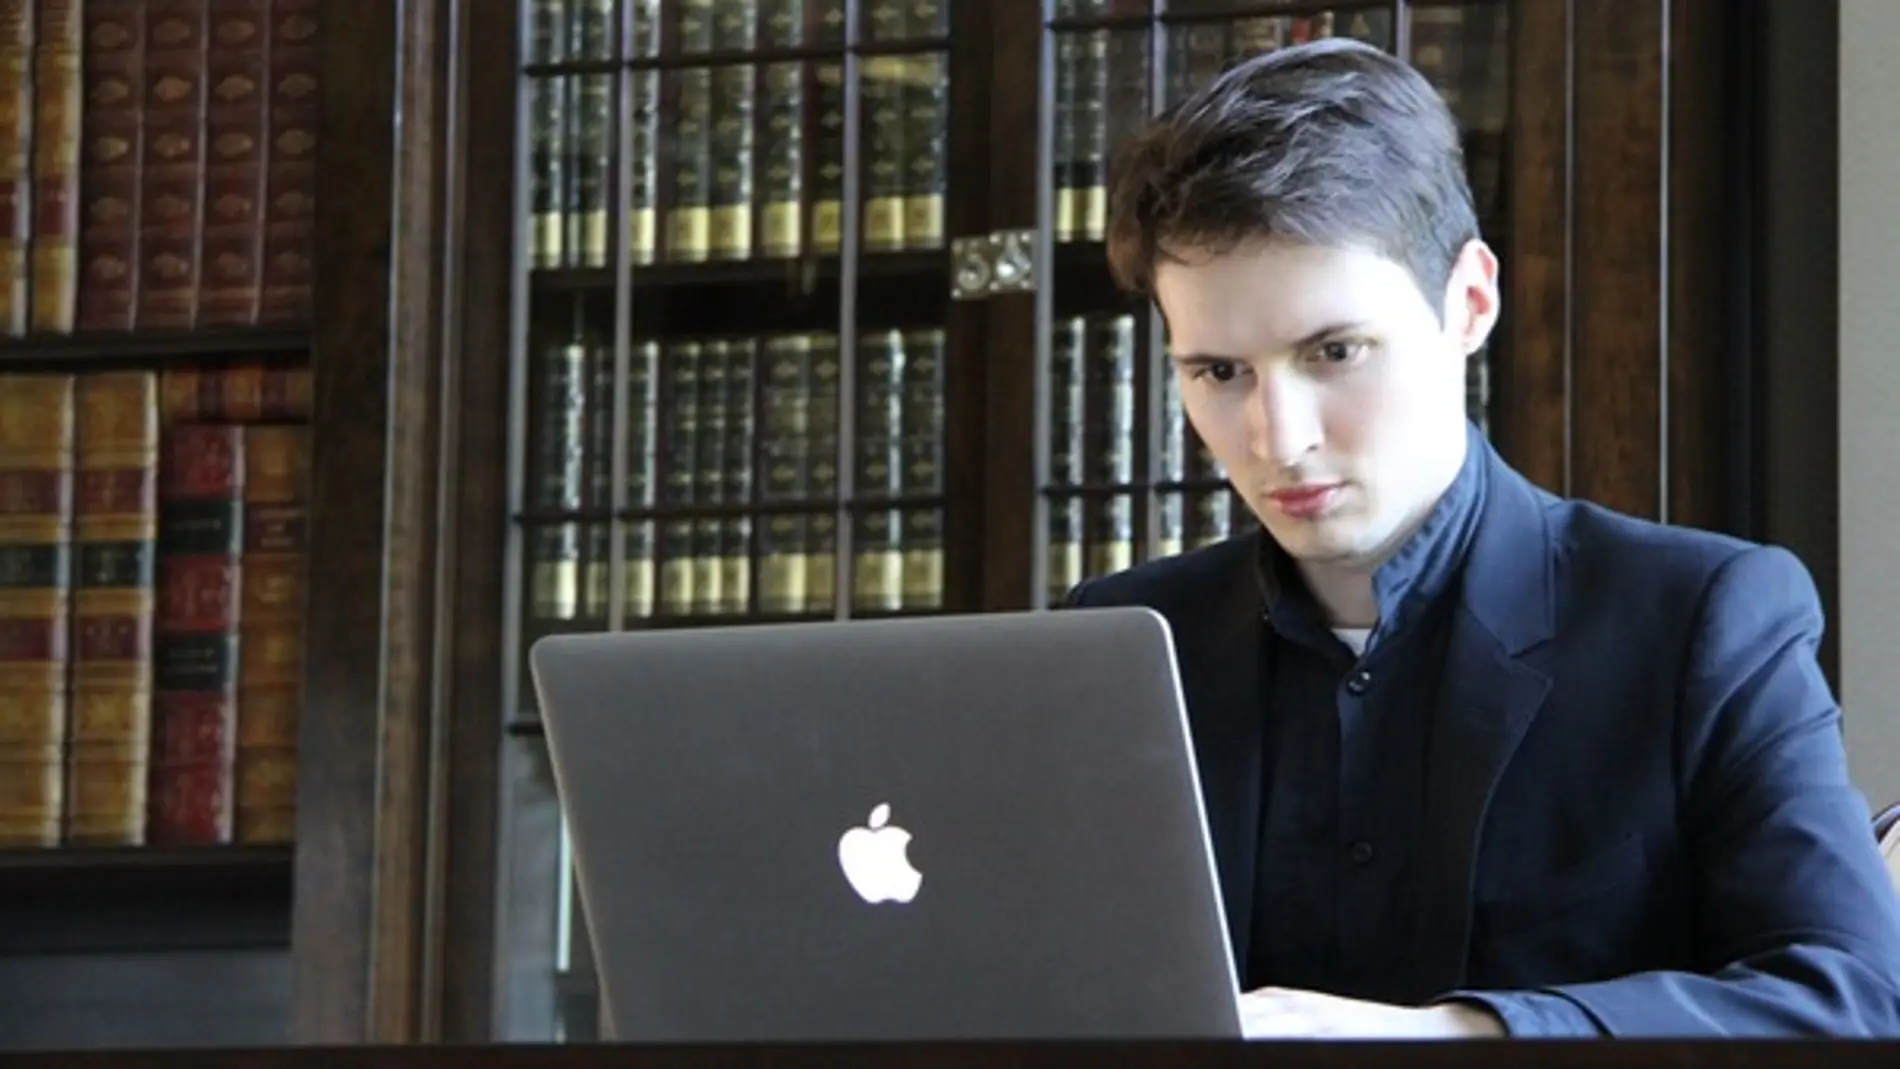 Pavel Durov, creador de Telegram